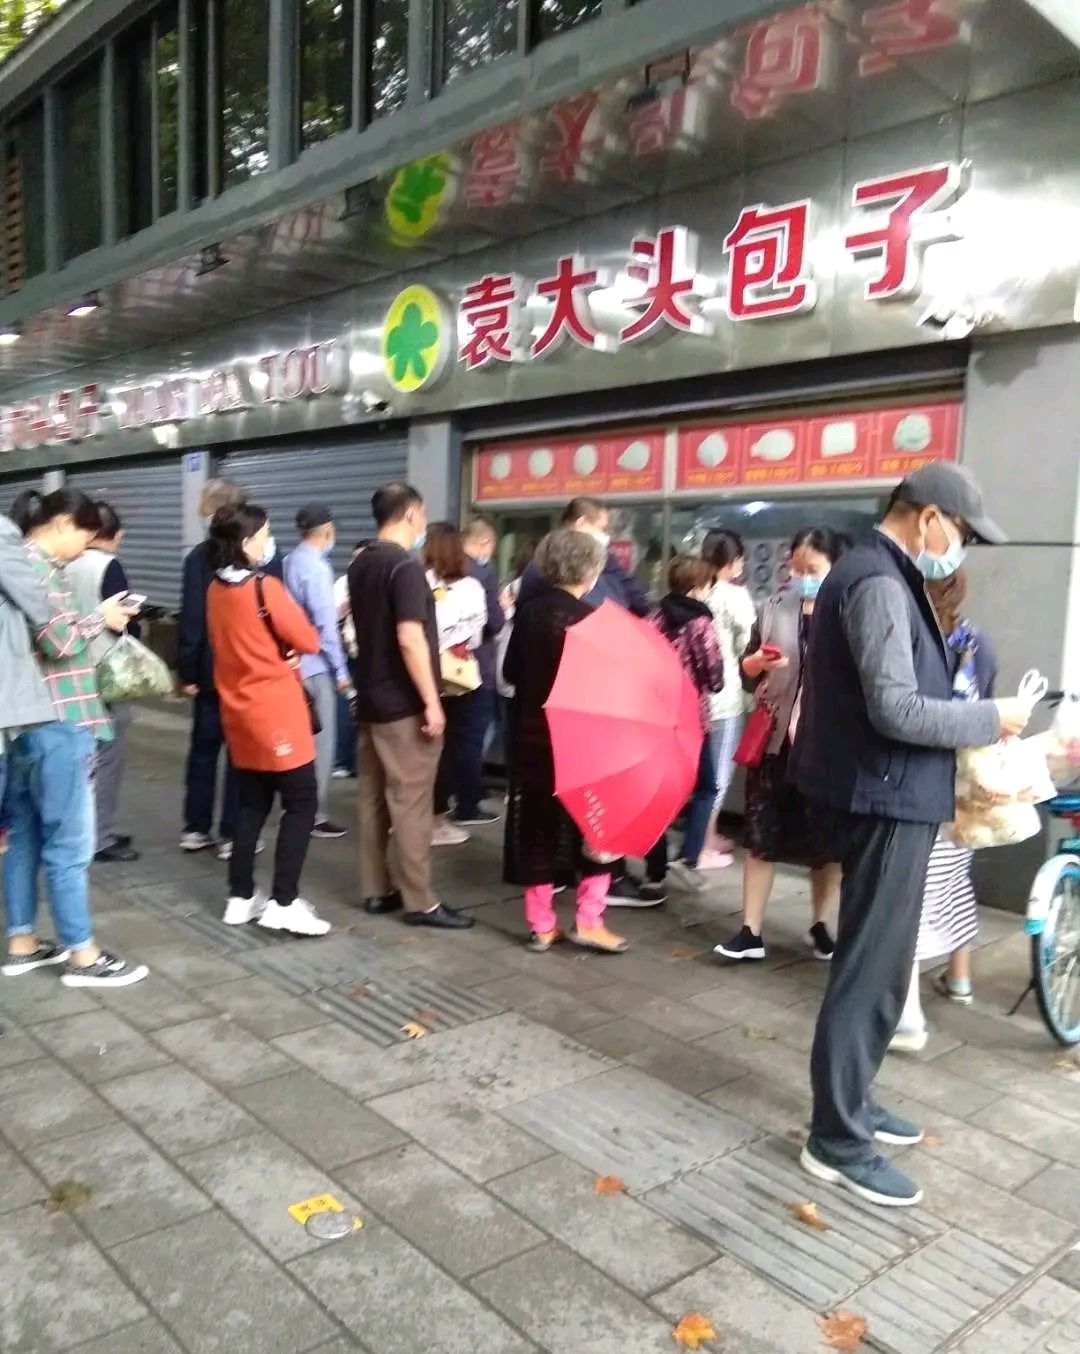 武汉市江岸区光华路某包子铺,下雨天都这么多人排队,大家怎么看